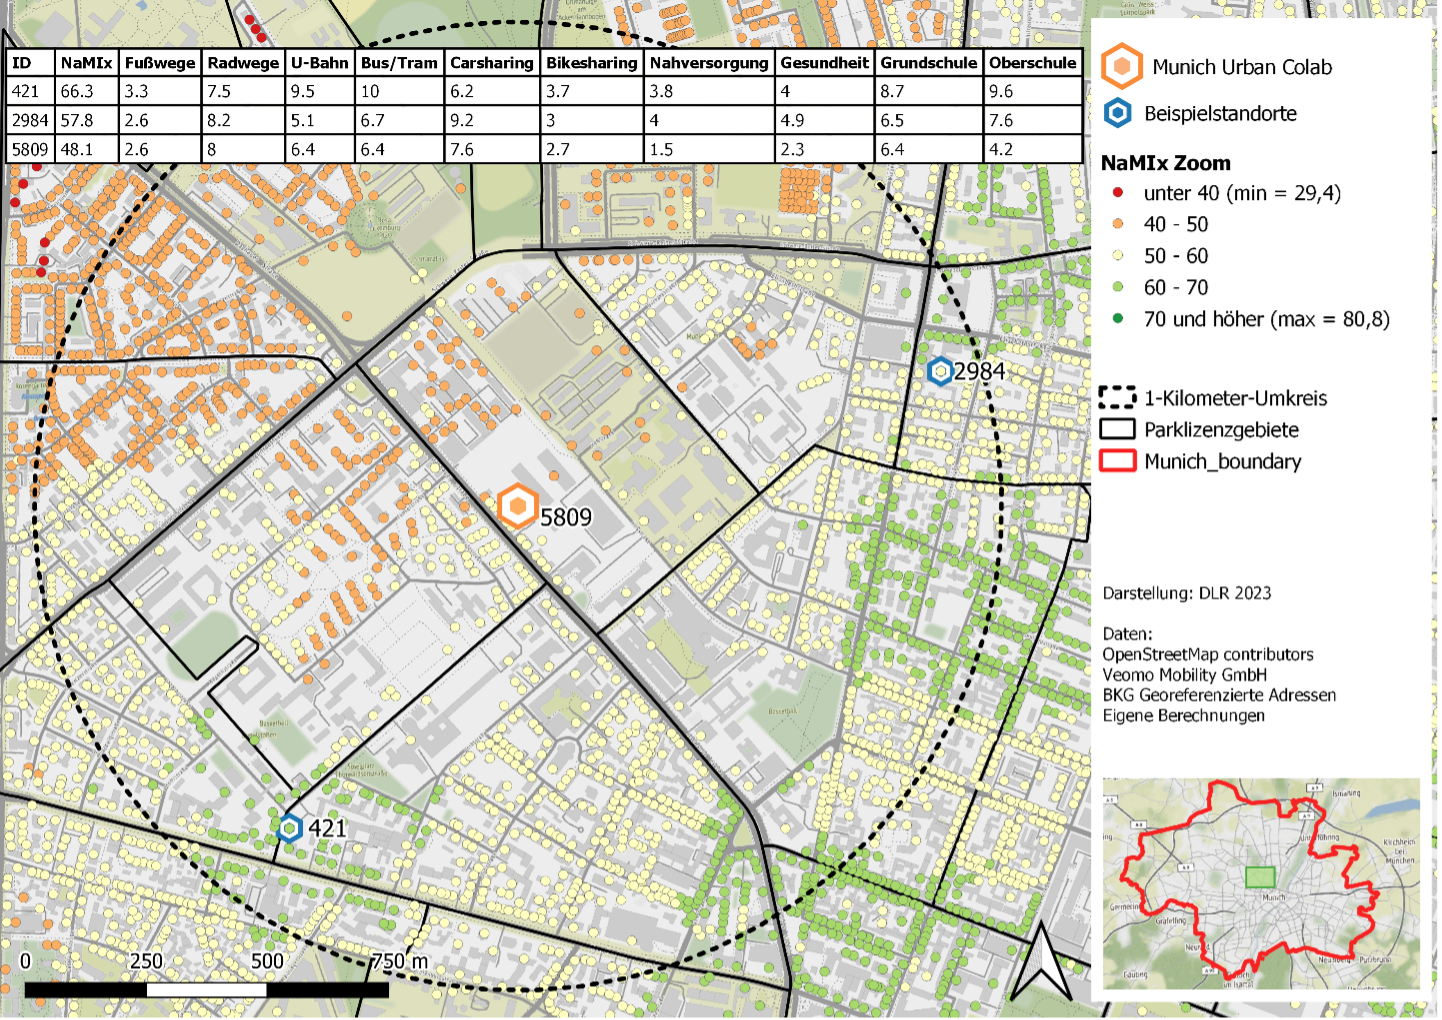 Stadtplangrafik von einem Quartier in München, auf der mit farbigen Punkten pro einzelner Adresse markiert ist, wie gut oder schlecht die Möglichkeiten für nichtmotorisierte Mobilität sind